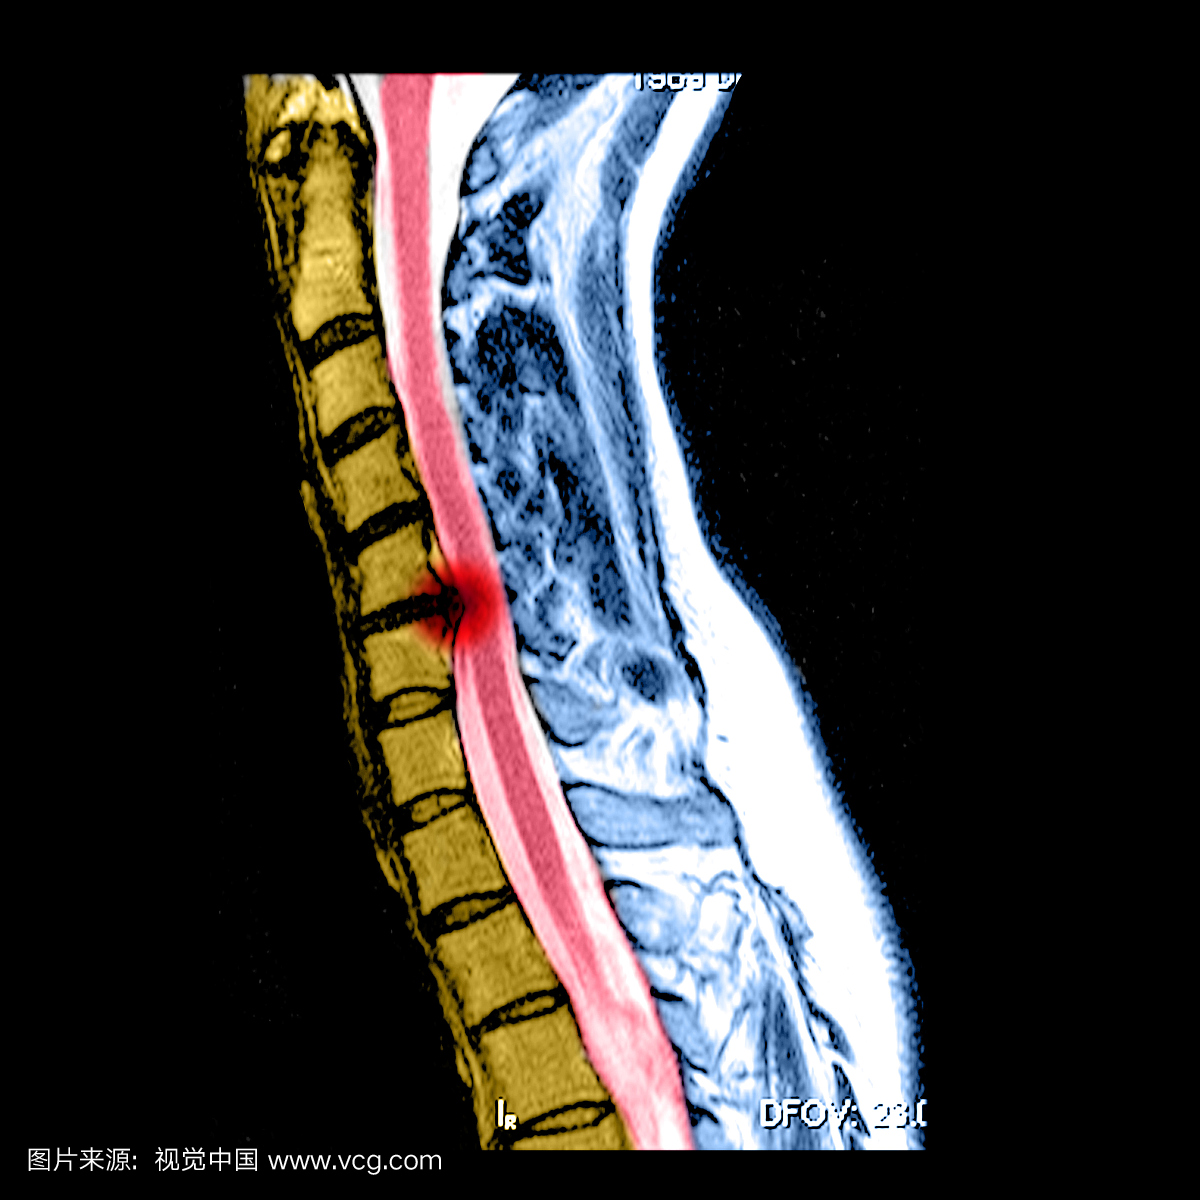 颈部(颈椎)的侧面(从侧面)MRI图像很好地显示了